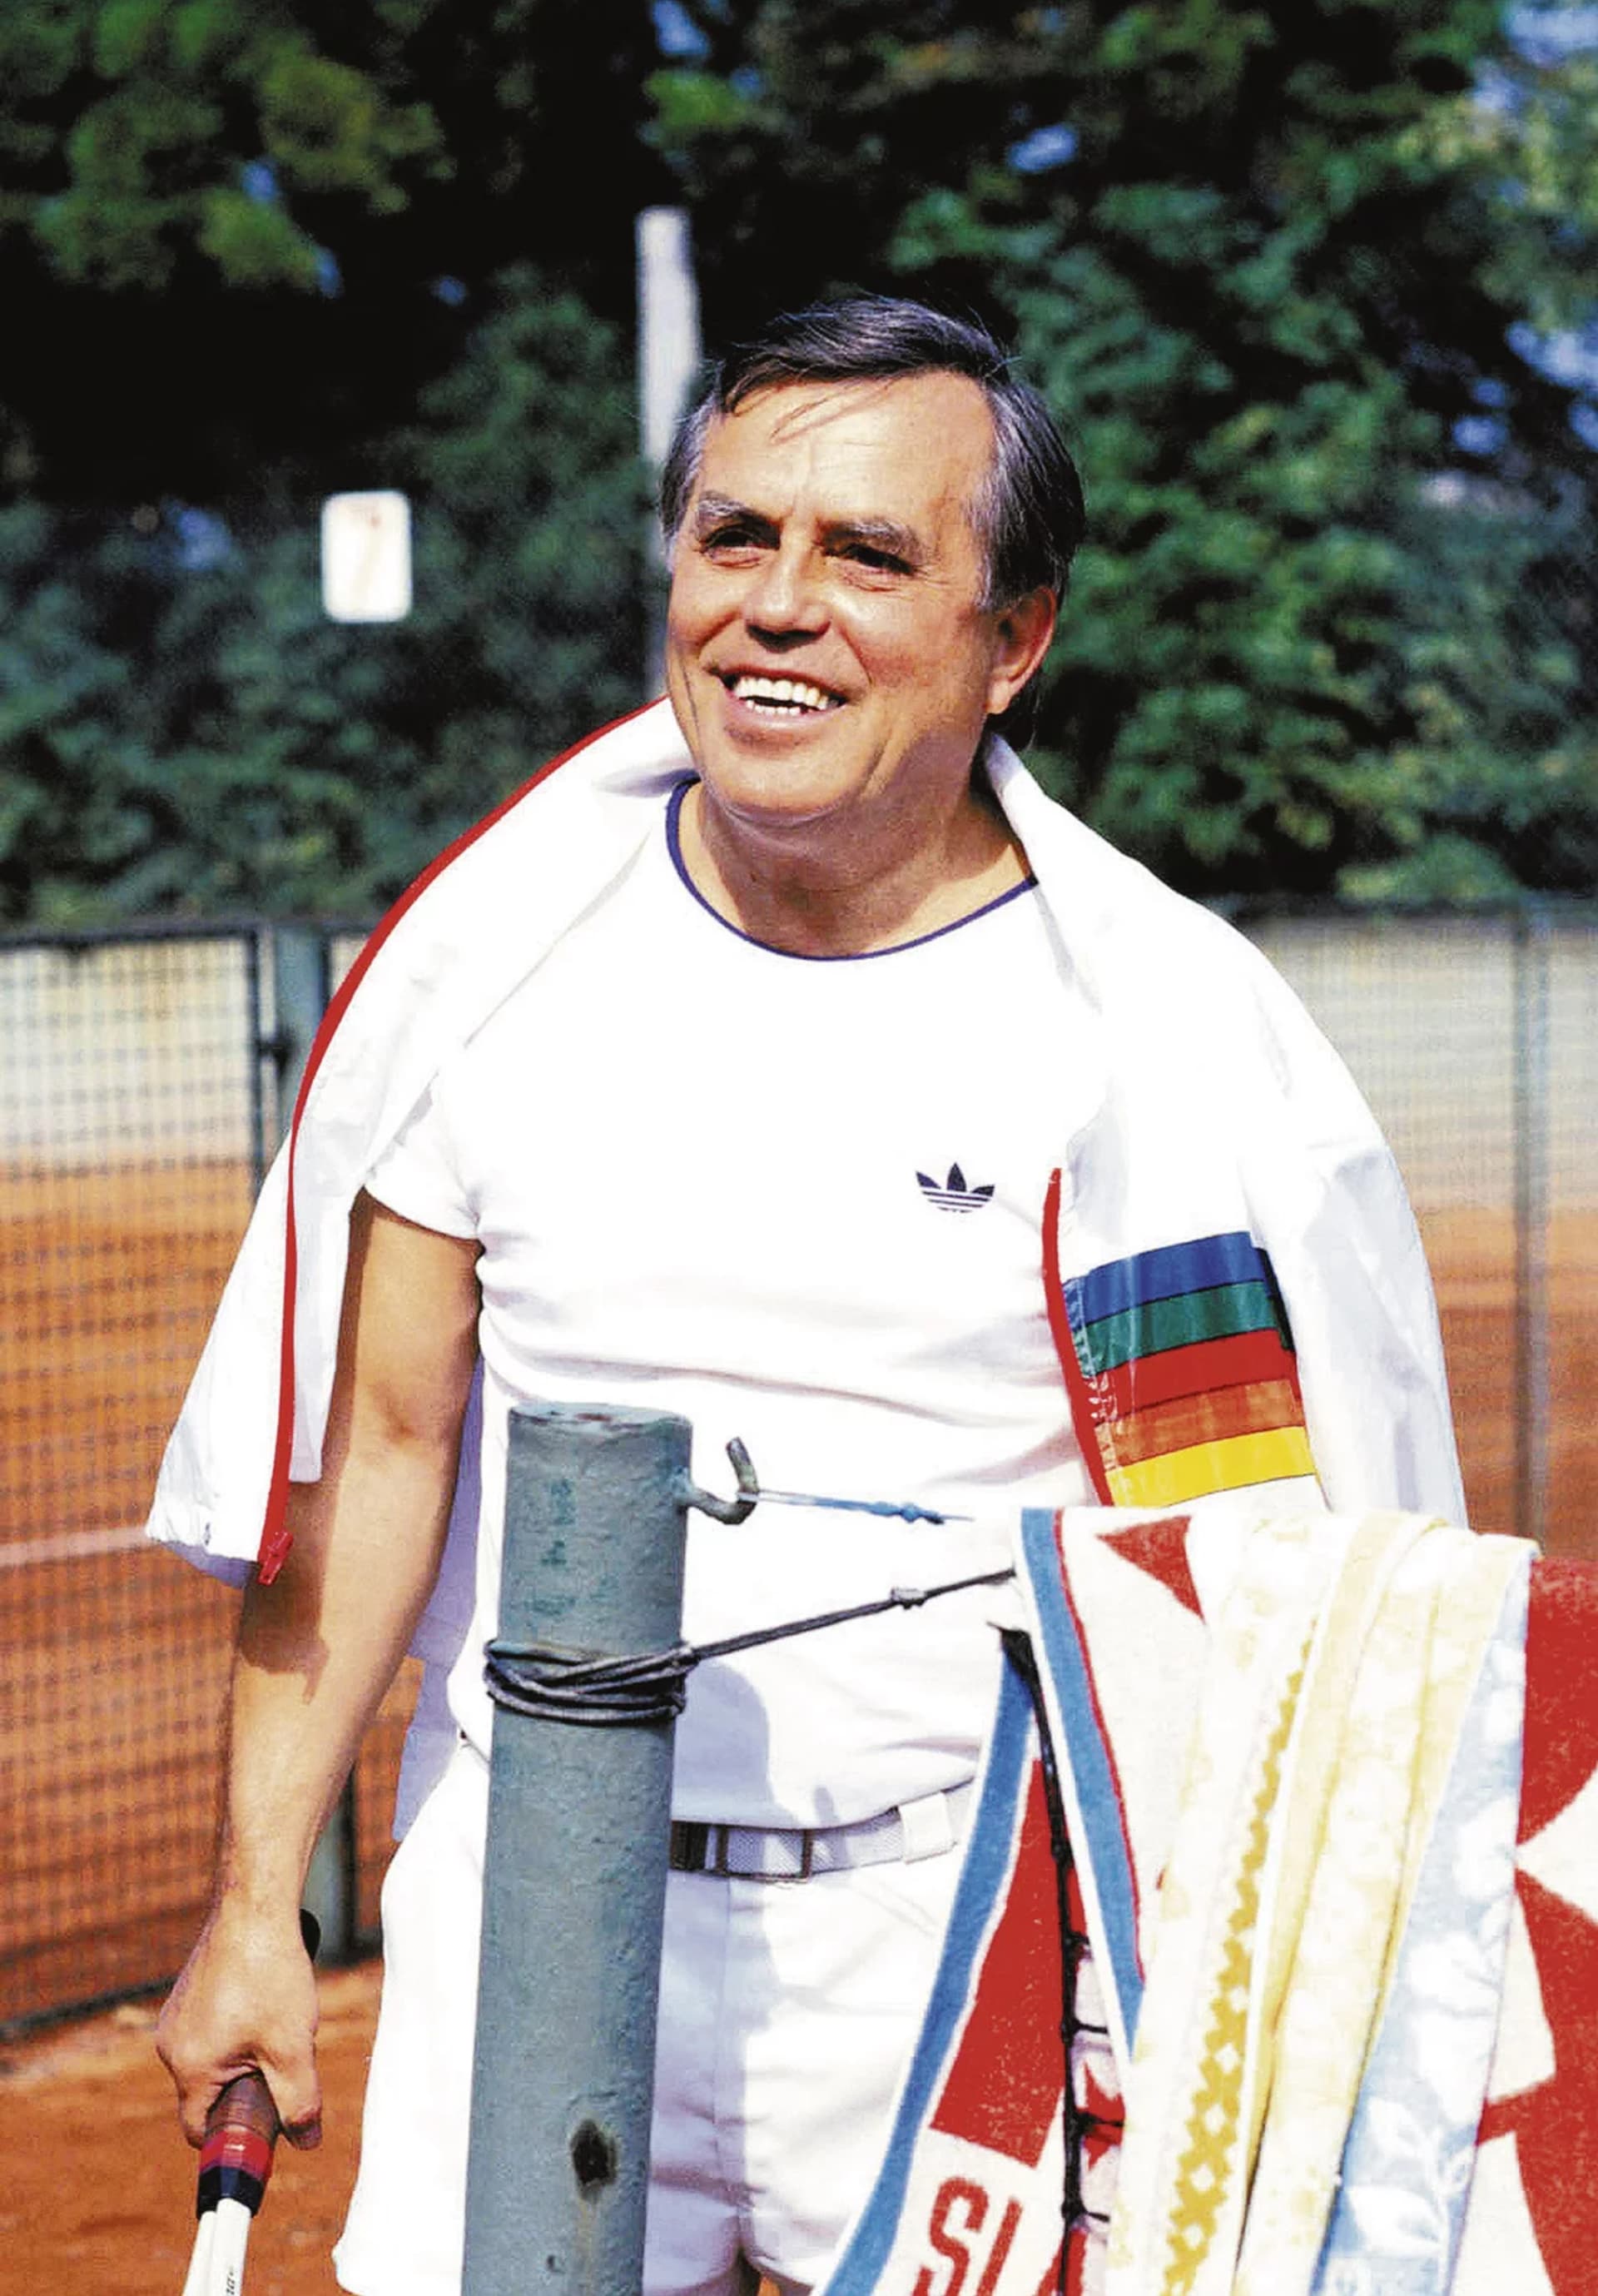 Antonín Jedlička našel smrt na tenisovém kurtu.